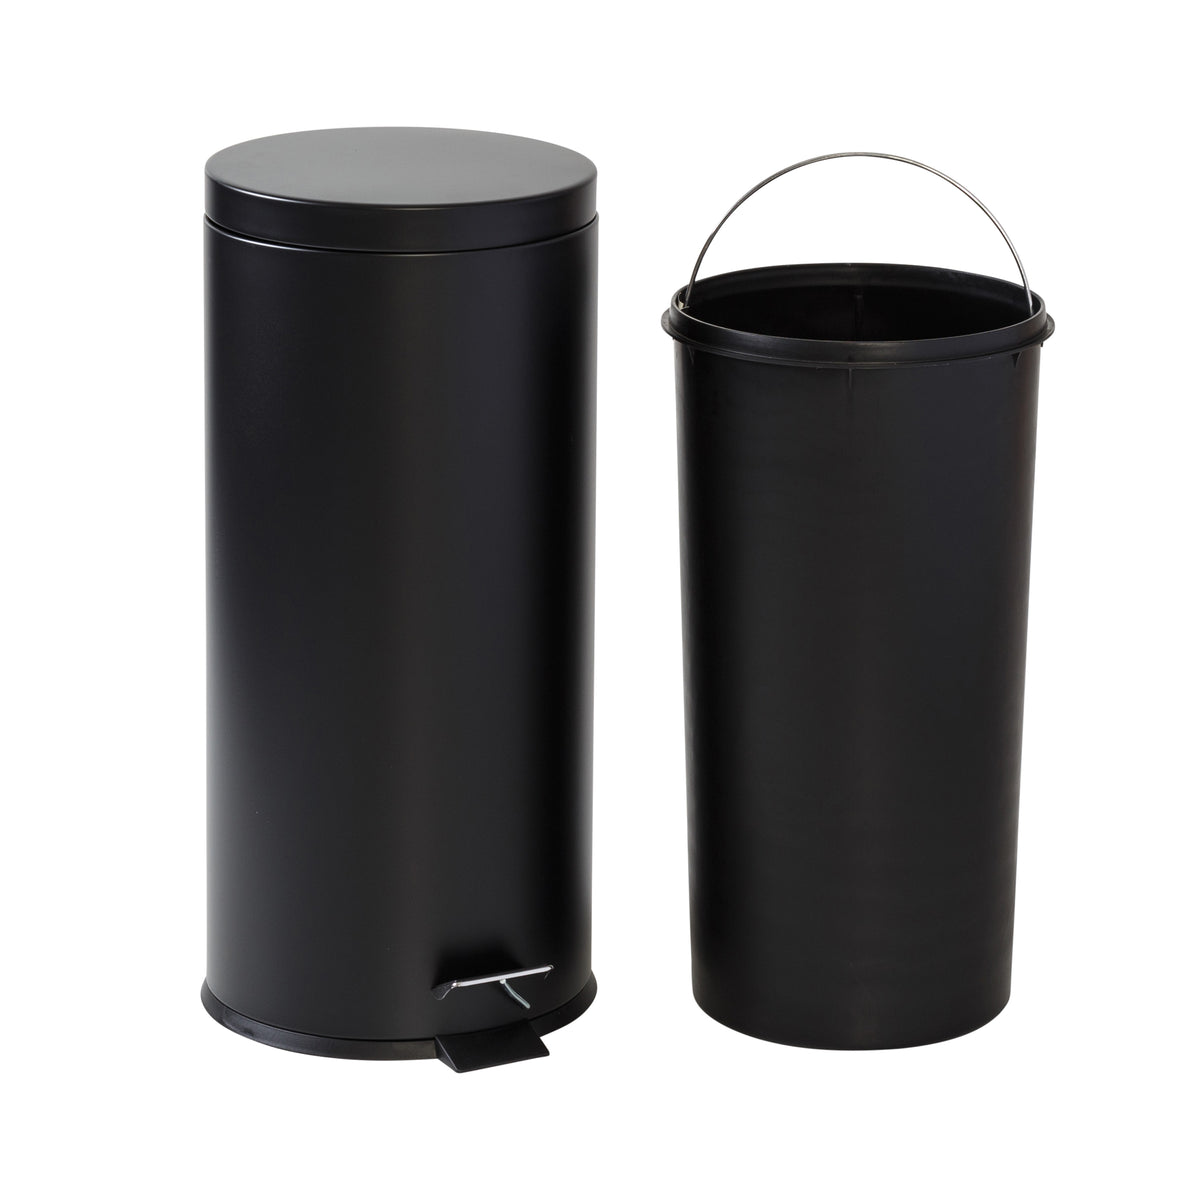 Black Cylinder Trash Can